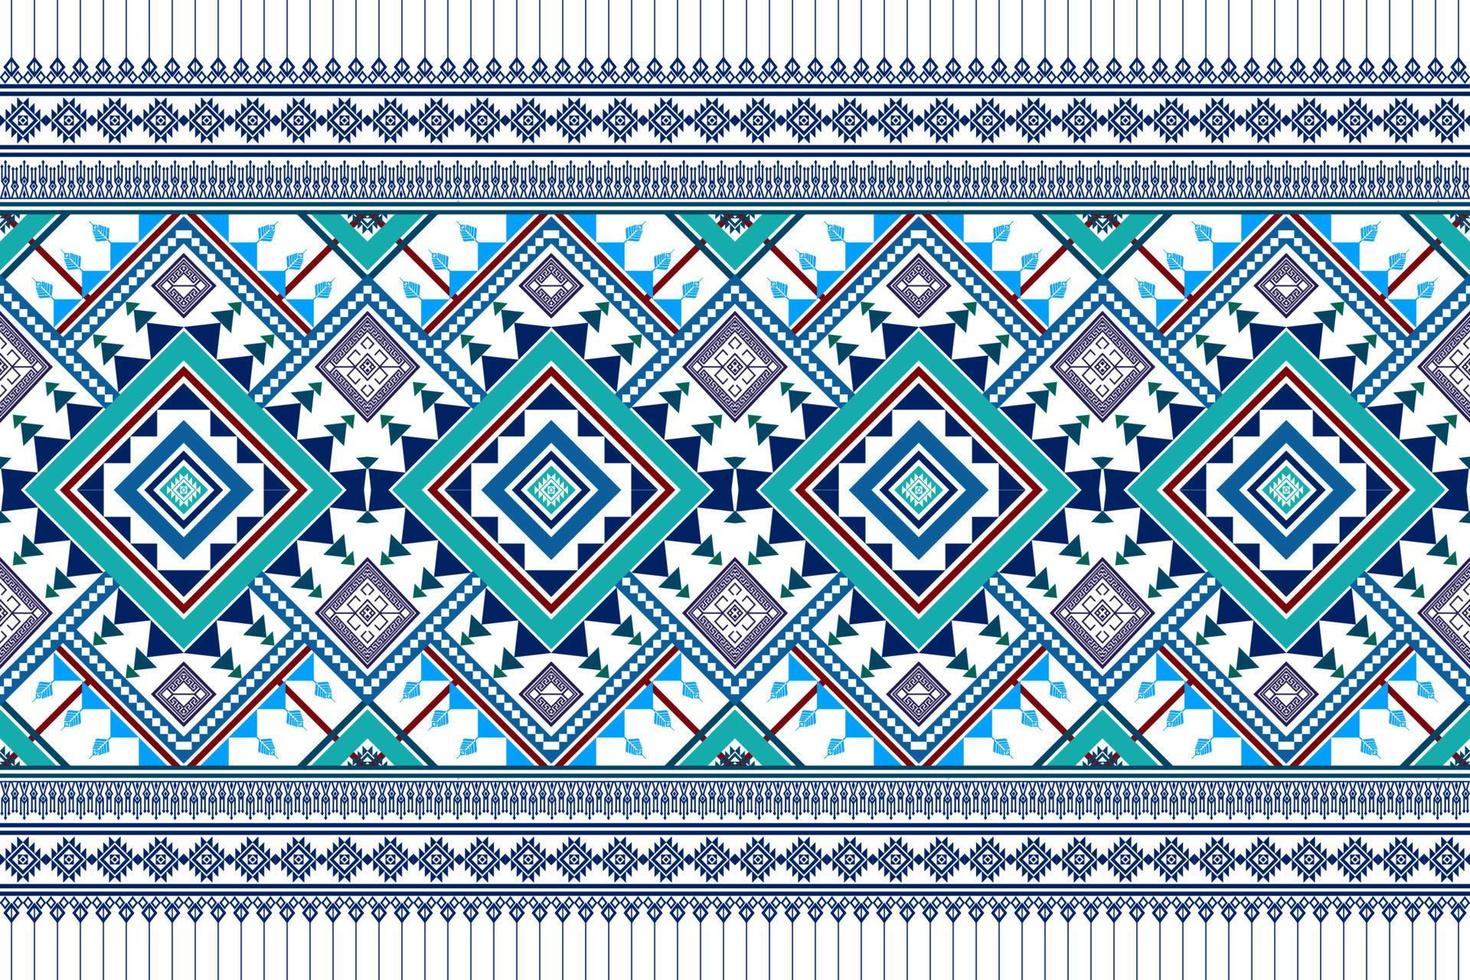 conception de motifs ethniques géométriques. tapis en tissu aztèque ornement mandala chevron décoration textile papier peint. fond de broderie traditionnelle indienne africaine de dinde tribale vecteur